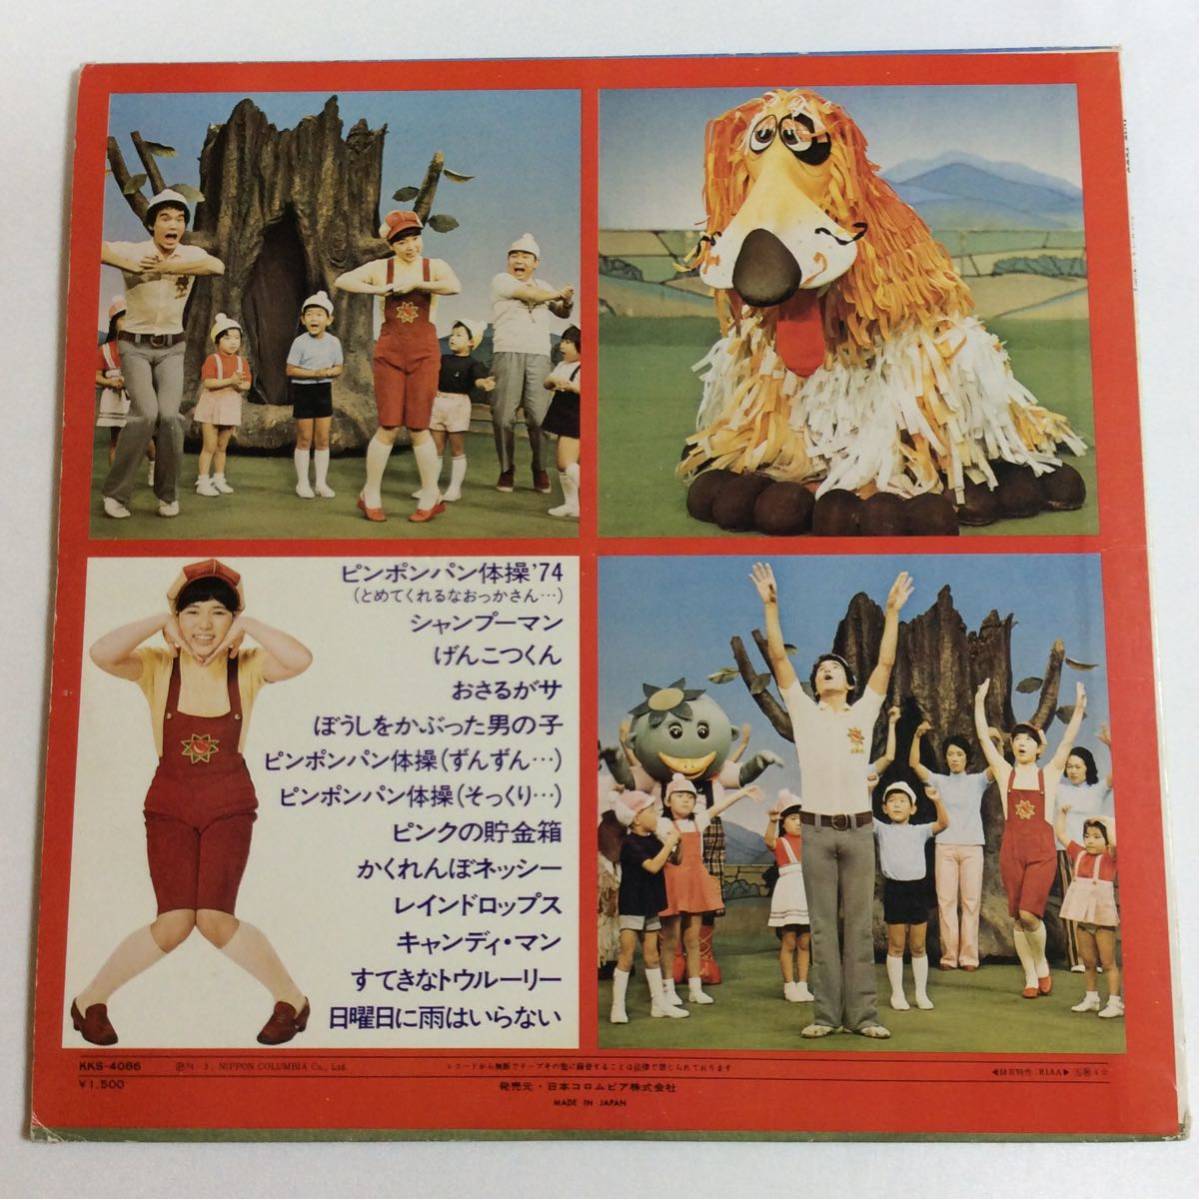 ピンポンパン体操 '74 / LP レコード / KKS-4086 / 1974 / 金森勢 